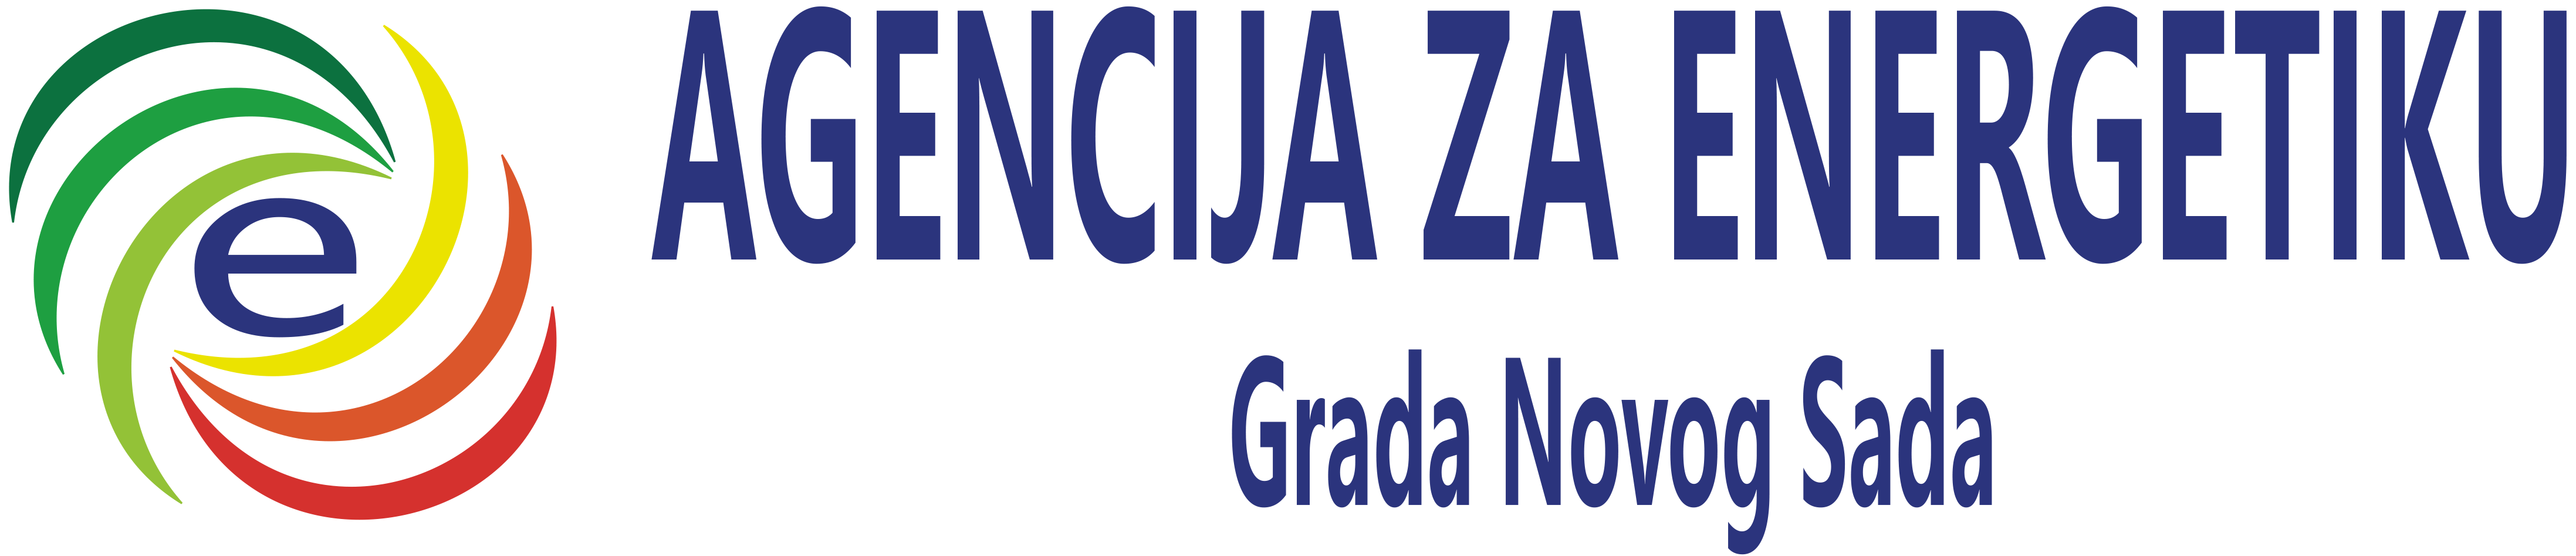 Agencija za energetiku Grada Novog Sada - Logo